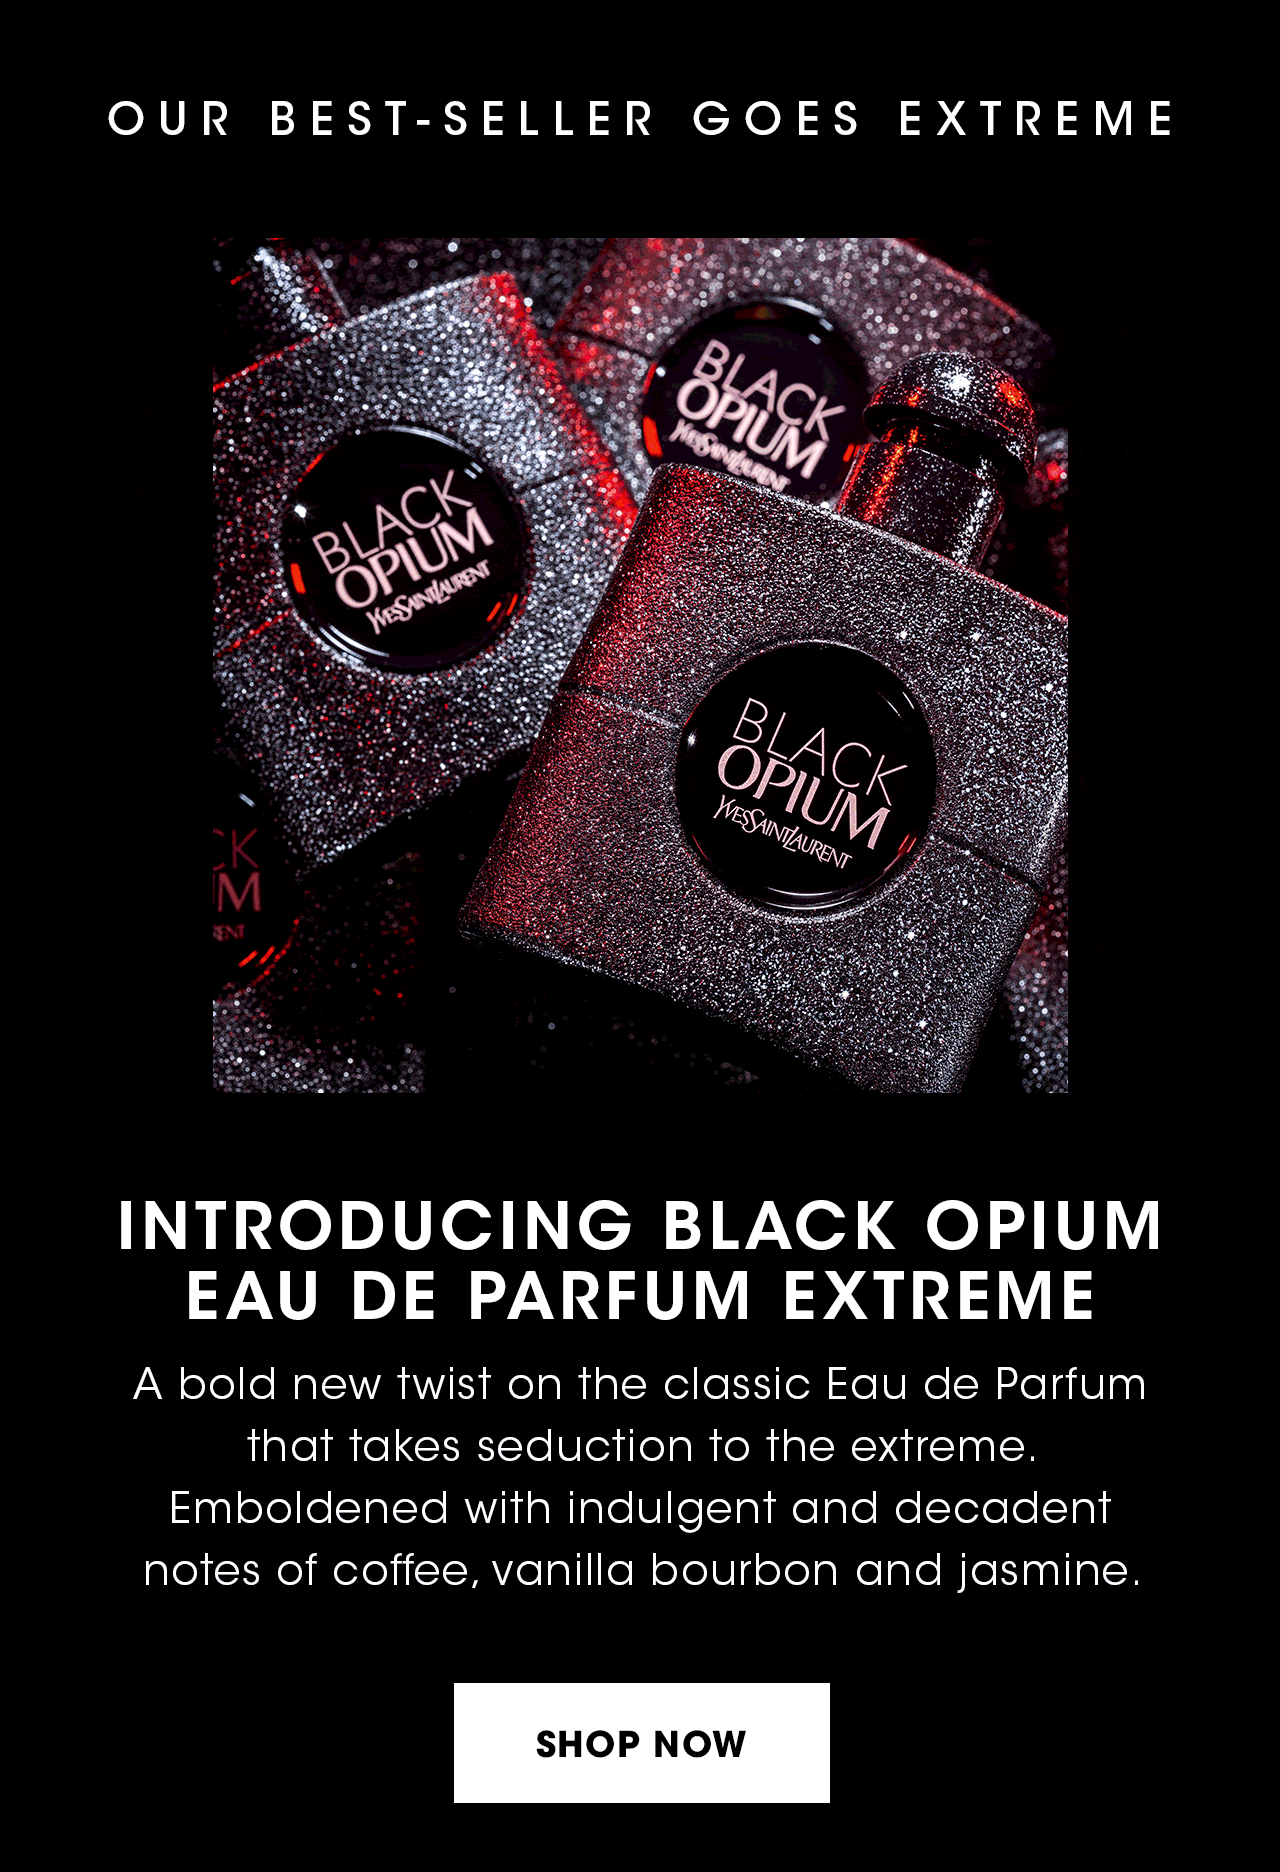 YSL Beauty US: Introducing: Black Opium Eau de Parfum Extreme